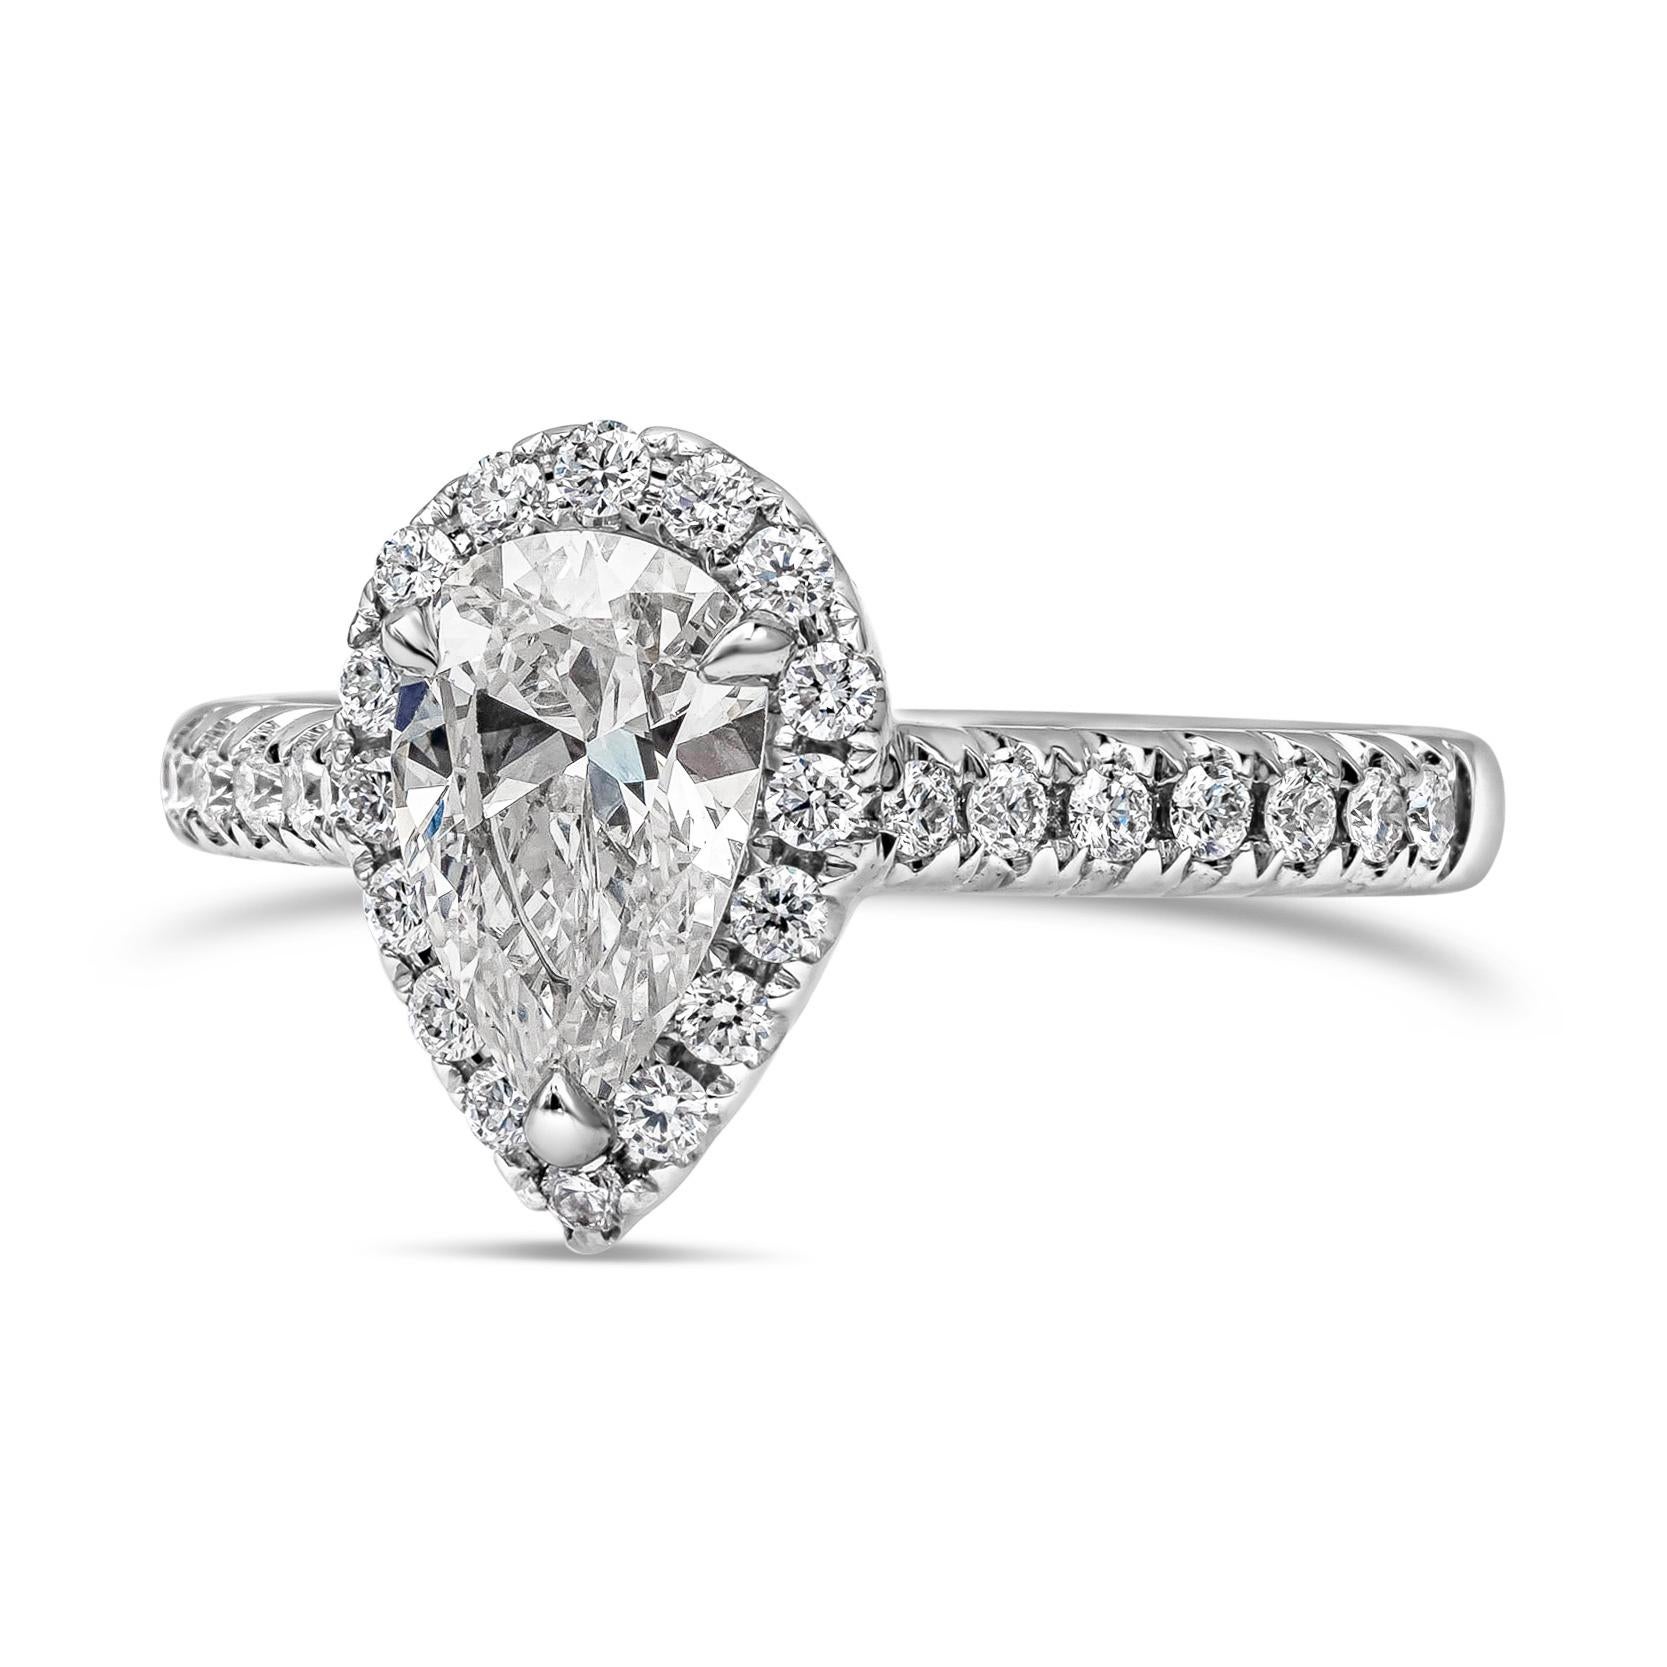 Ein klassischer Verlobungsring mit einem 1,04 Karat schweren, birnenförmigen Diamanten, der von GIA mit der Farbe E und der Reinheit VS2 zertifiziert wurde. Der zentrale Diamant ist von einer Reihe runder Diamanten im Brillantschliff von insgesamt